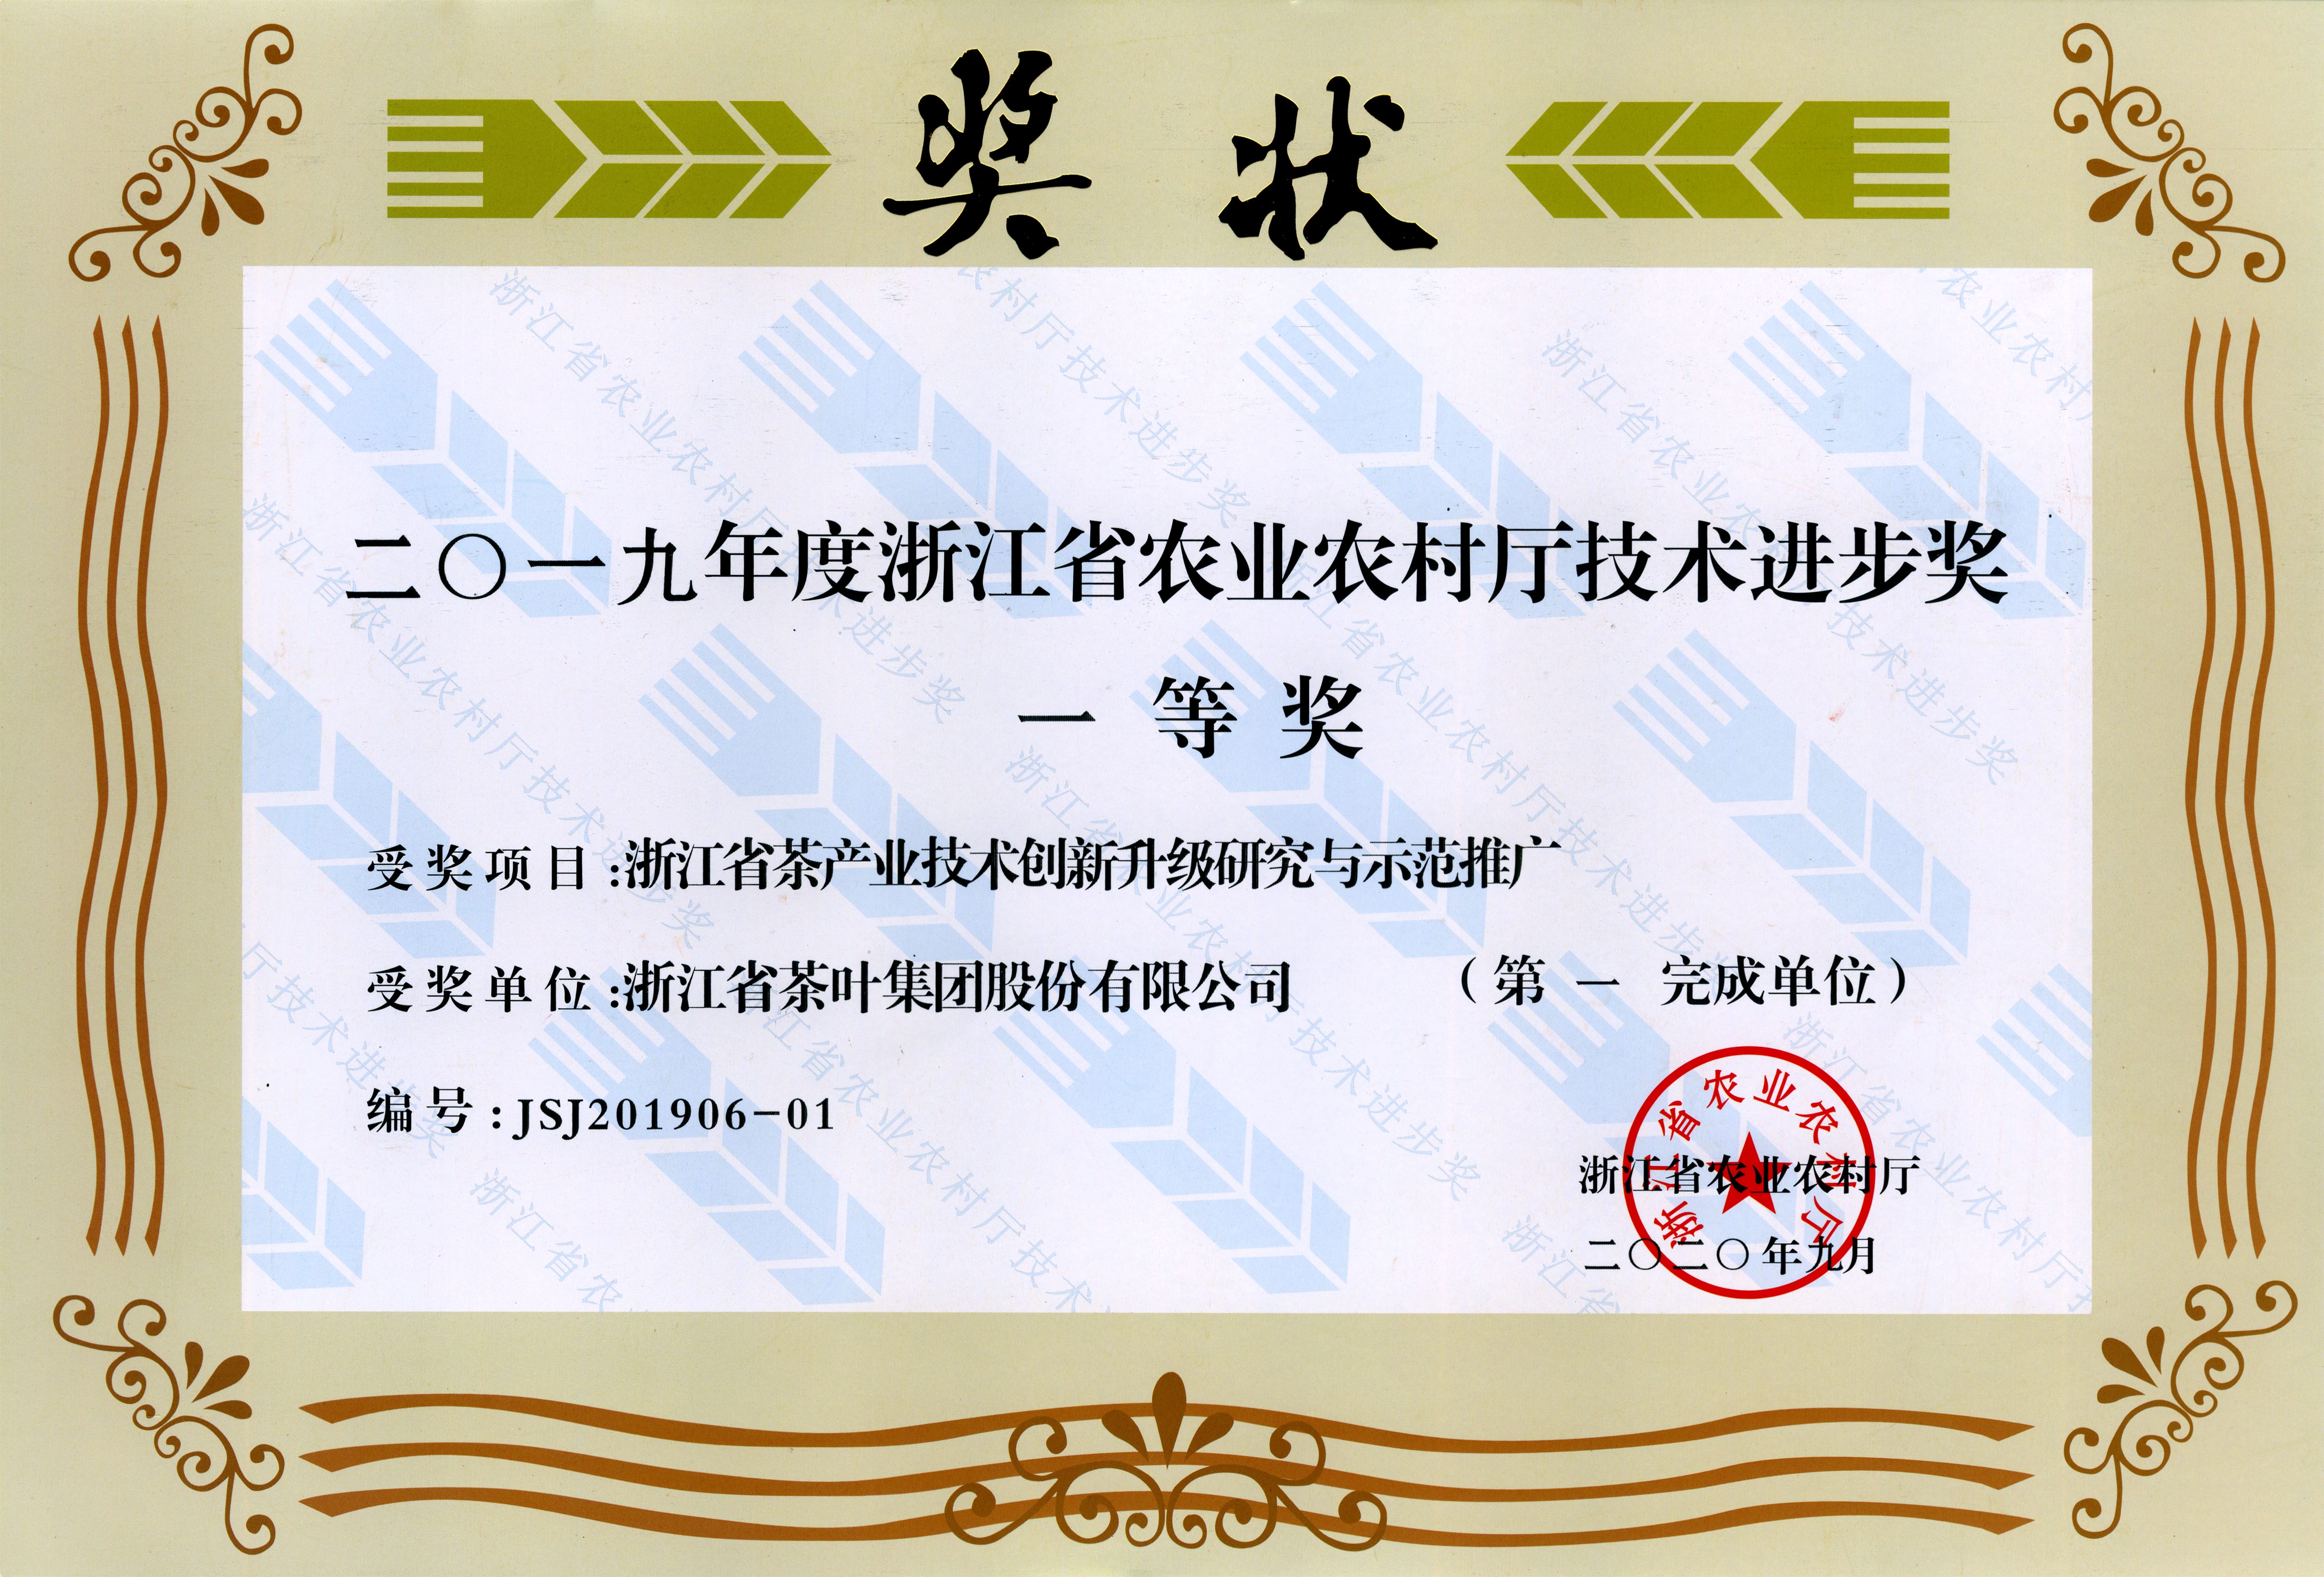 米乐app官网(中国)有限公司牵头完成项目荣获省农业农村厅 技术进步一等奖